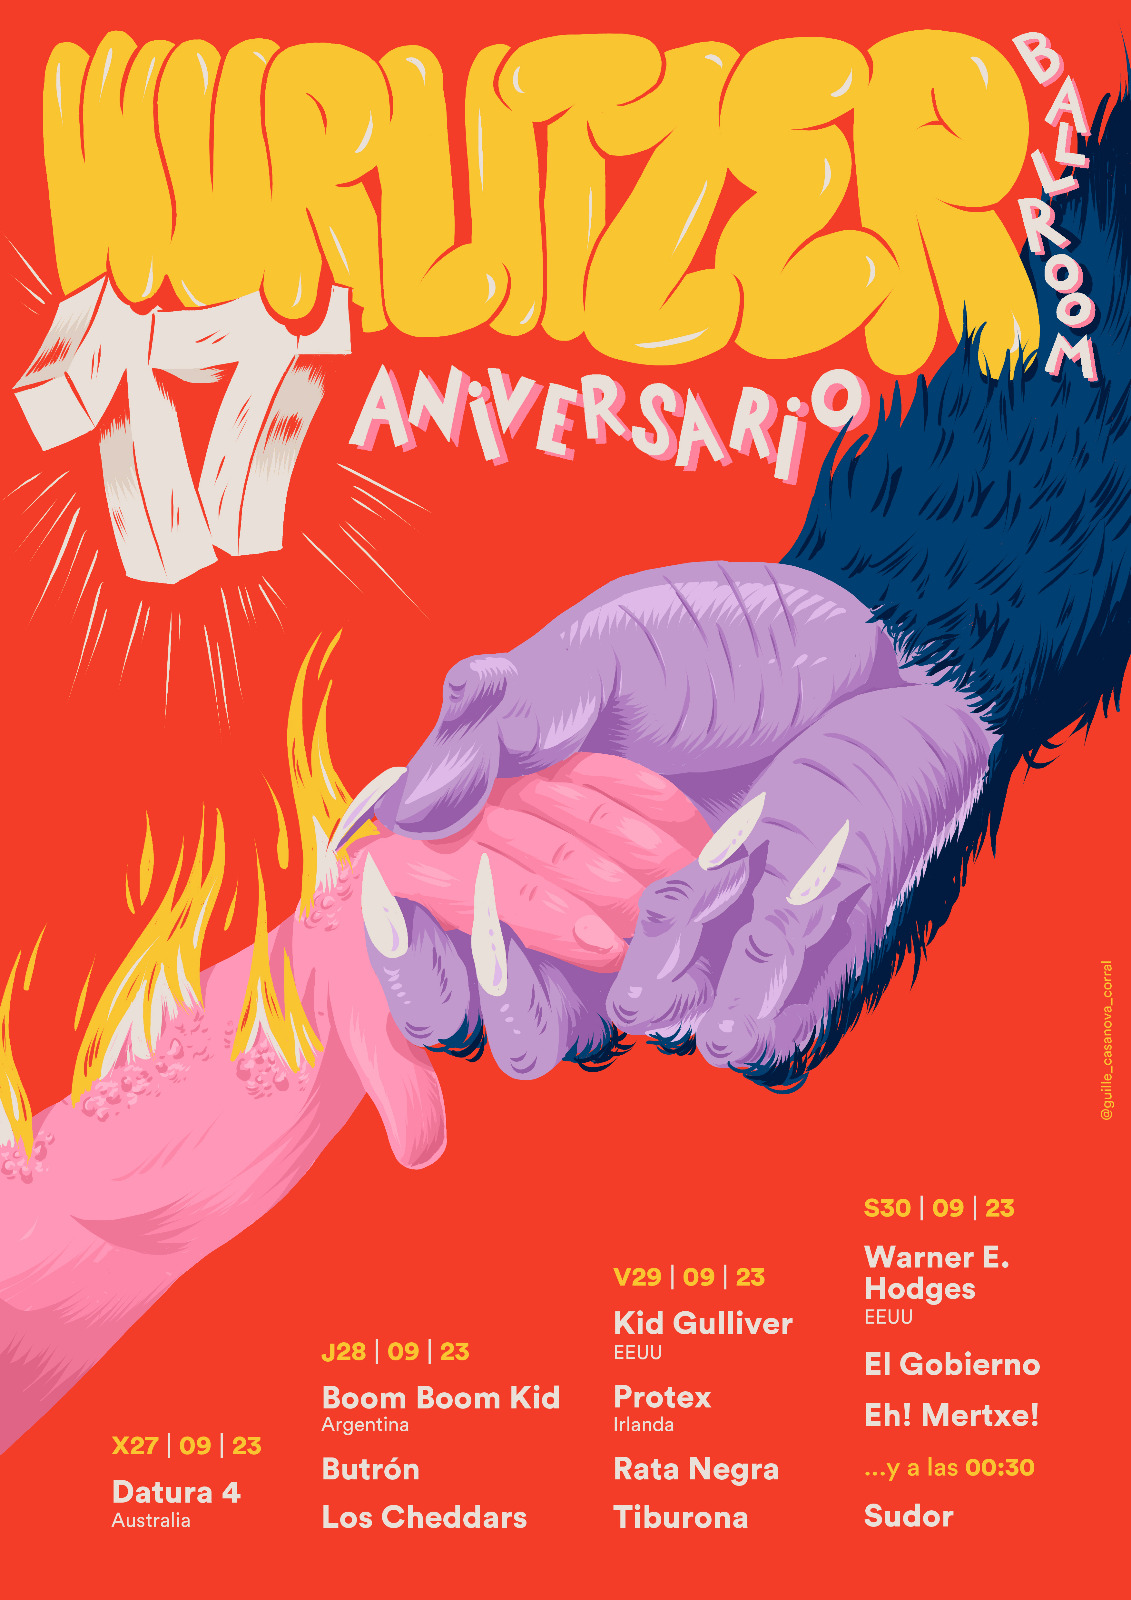 ABONOS Aniversario Wurlitzer en Madrid - Mutick